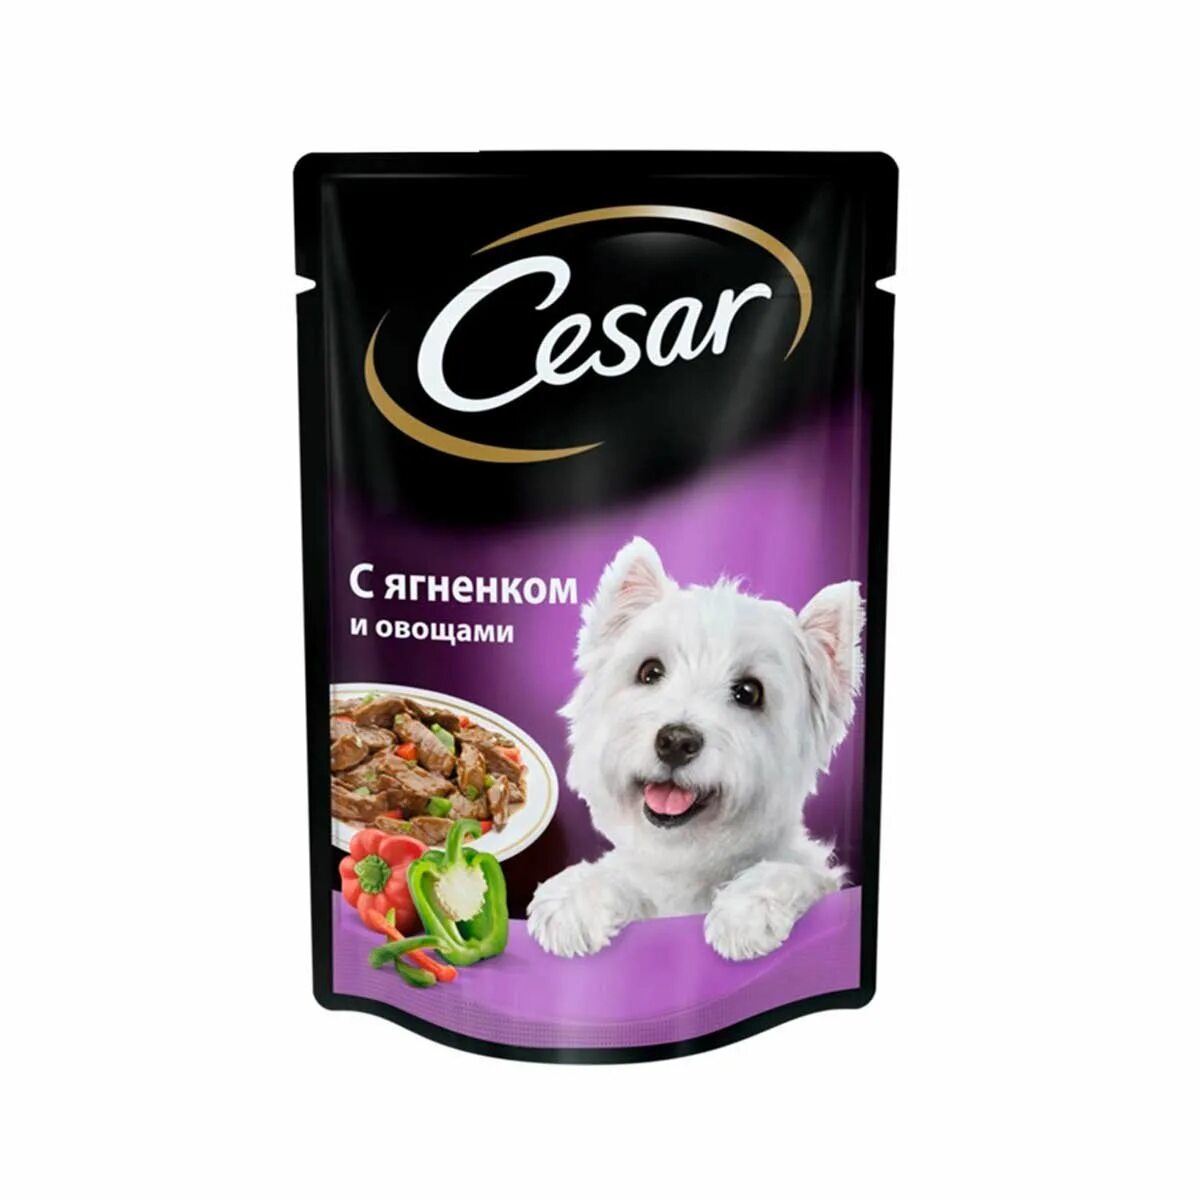 Мягкий корм для собак. Корм для собак Cesar ягненок 100г. Корм для собак Cesar ягненок в сырном соусе 100г. Влажный корм для собак Cesar. Сезар корм влажный для собак.